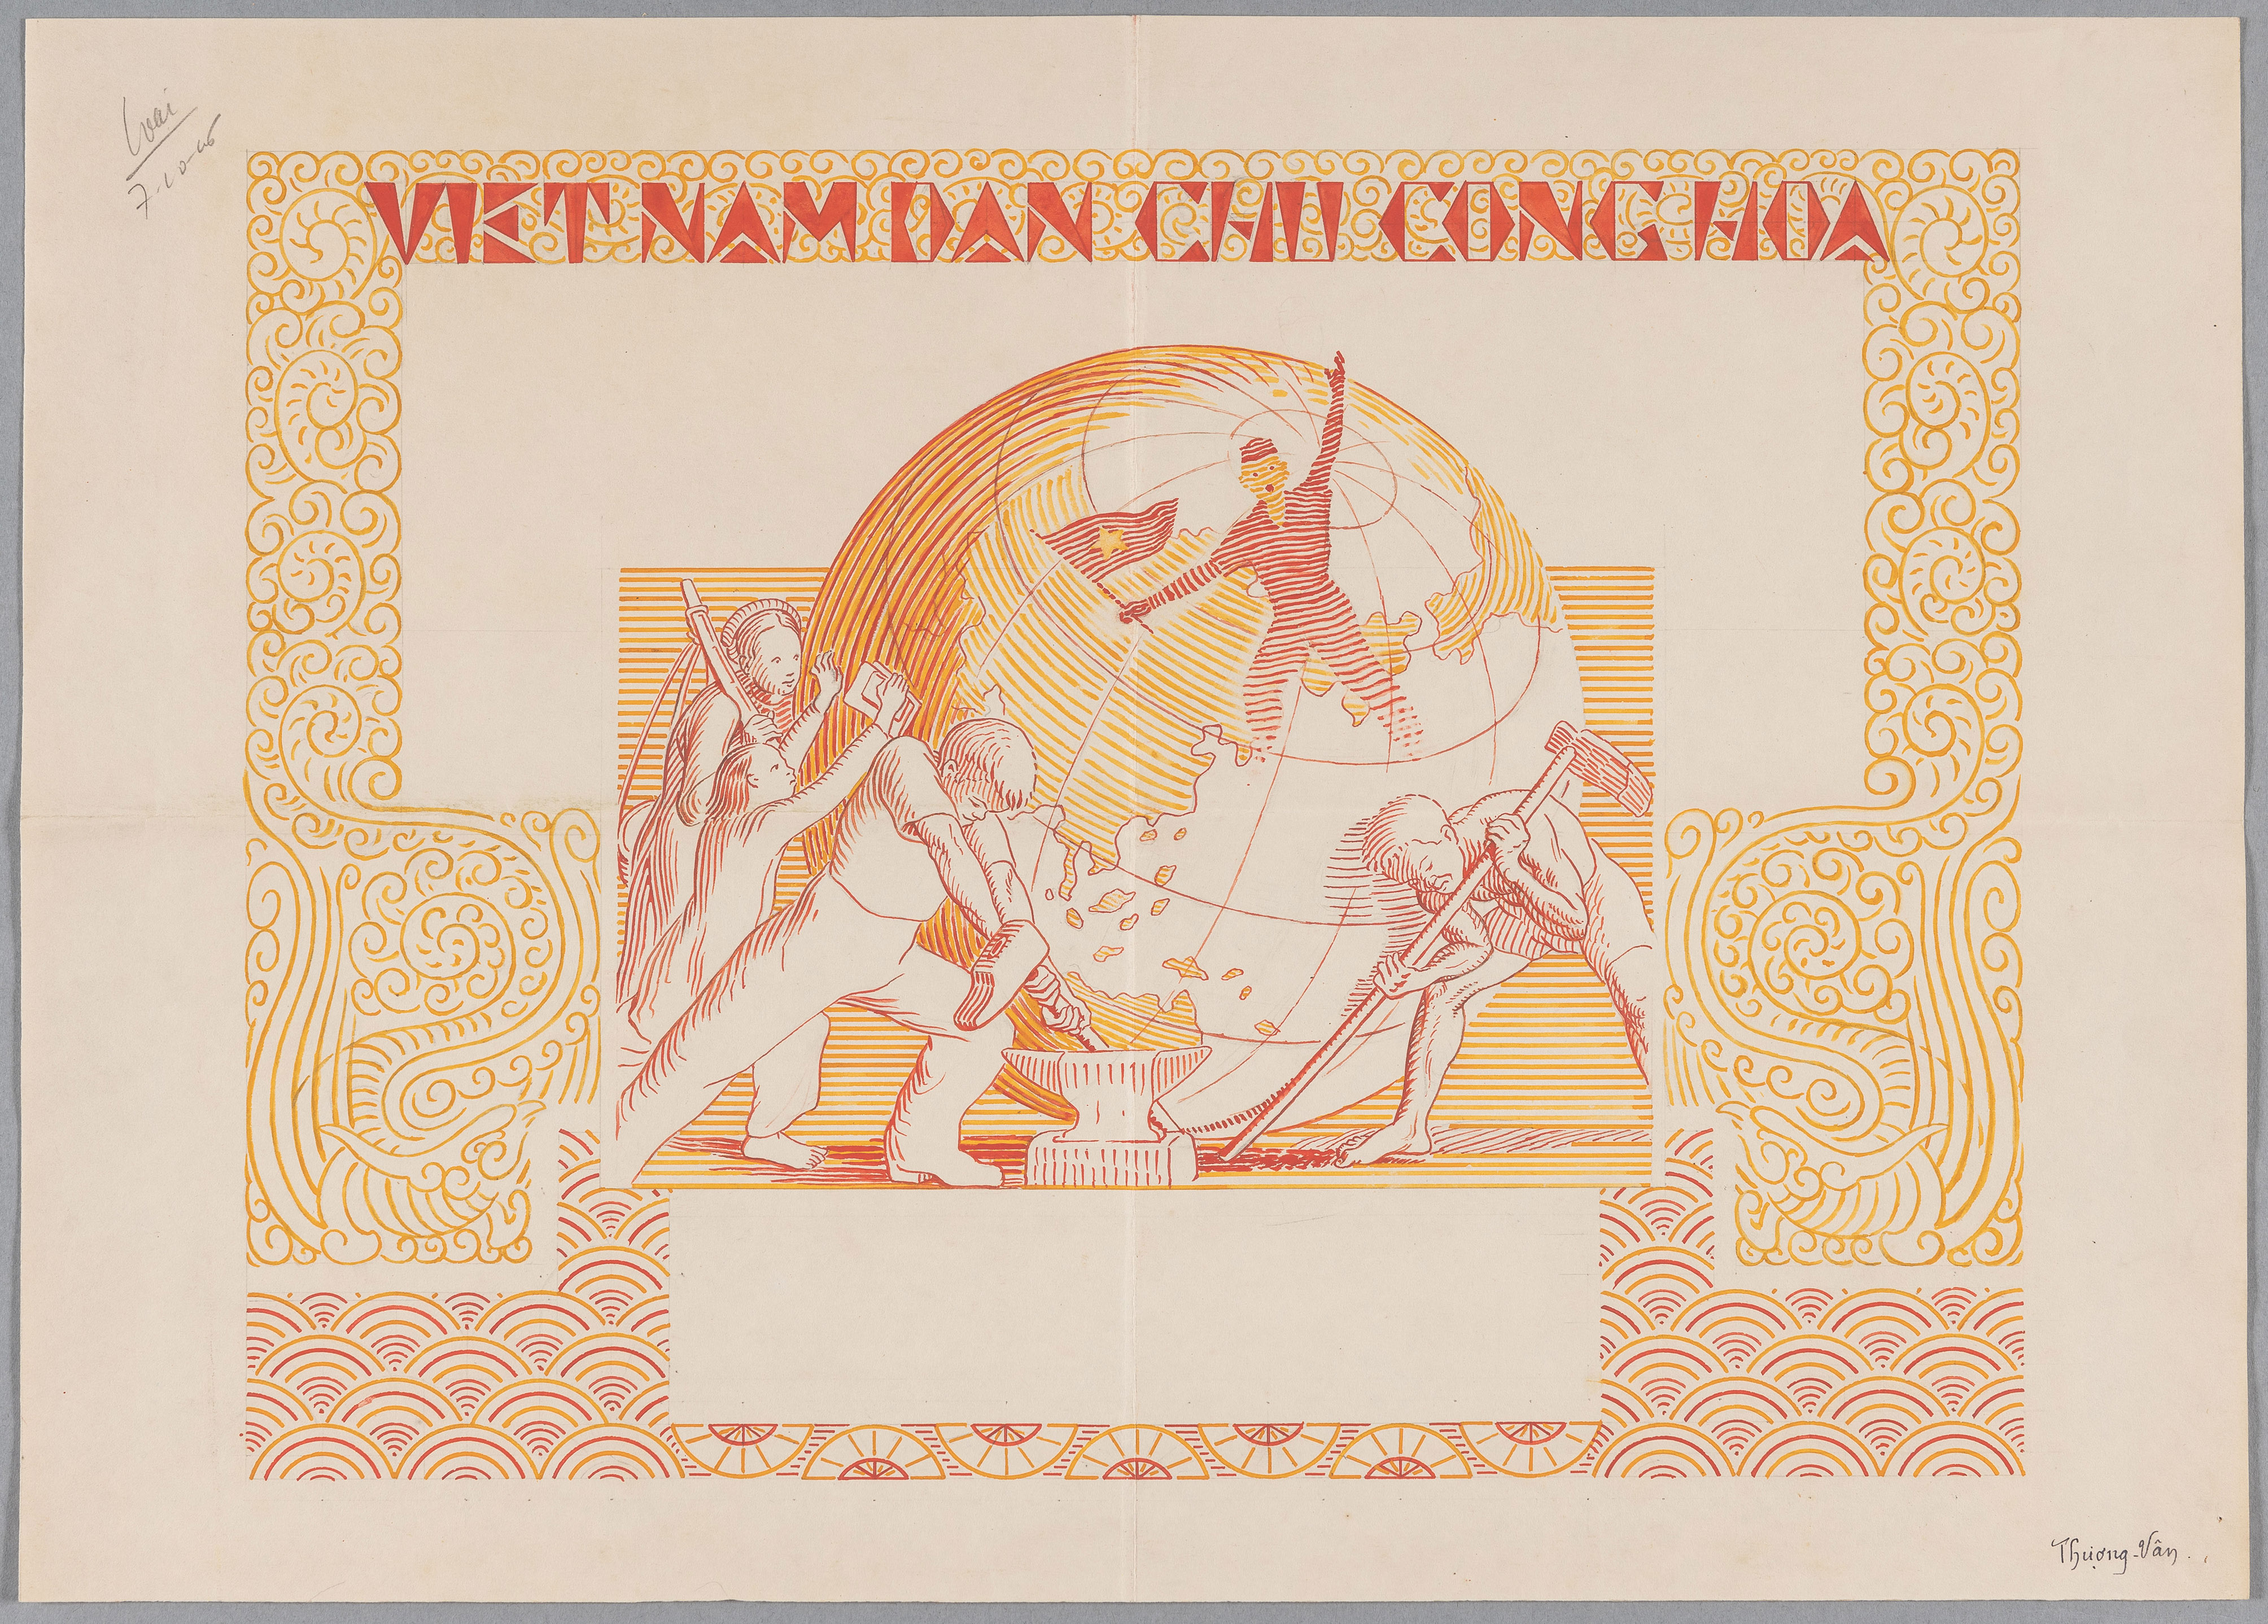 Diplôme décerné par la République démocratique du Vietnam, gouaches de couleurs sur papier, 1946